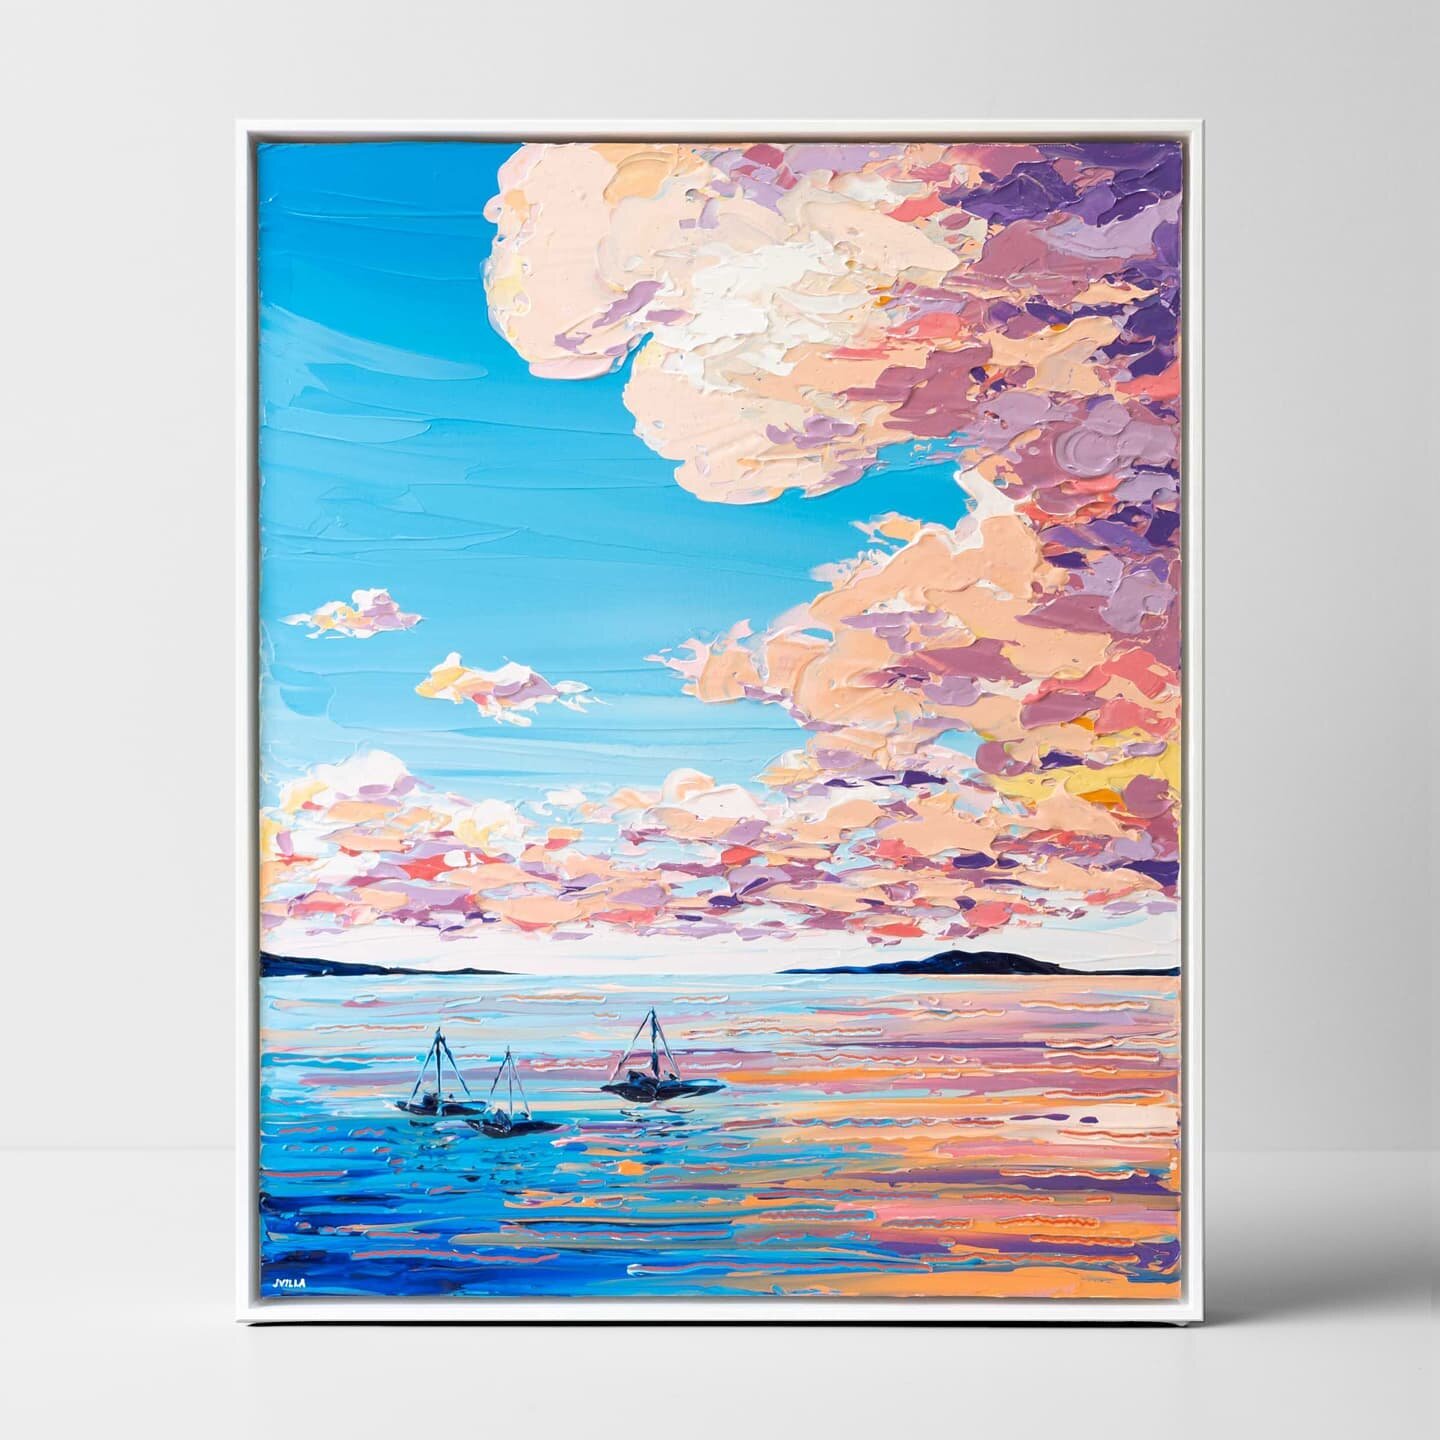 Sunset Sea 8 
Acrylic on canvas
76x61cm
Framed